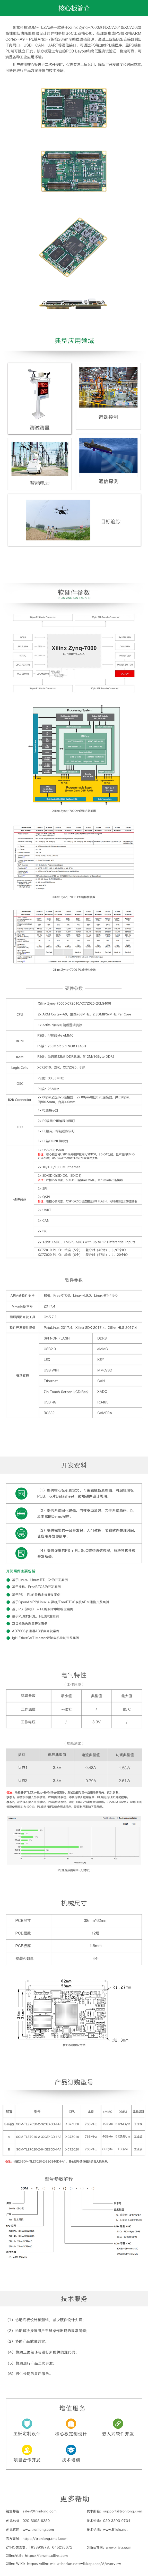 XC7Z020|FPGA|Zynq7020|Zynq7010|Zynq7000核心板|开发板|Cortex-A9|Artix-7|ARM|Linux